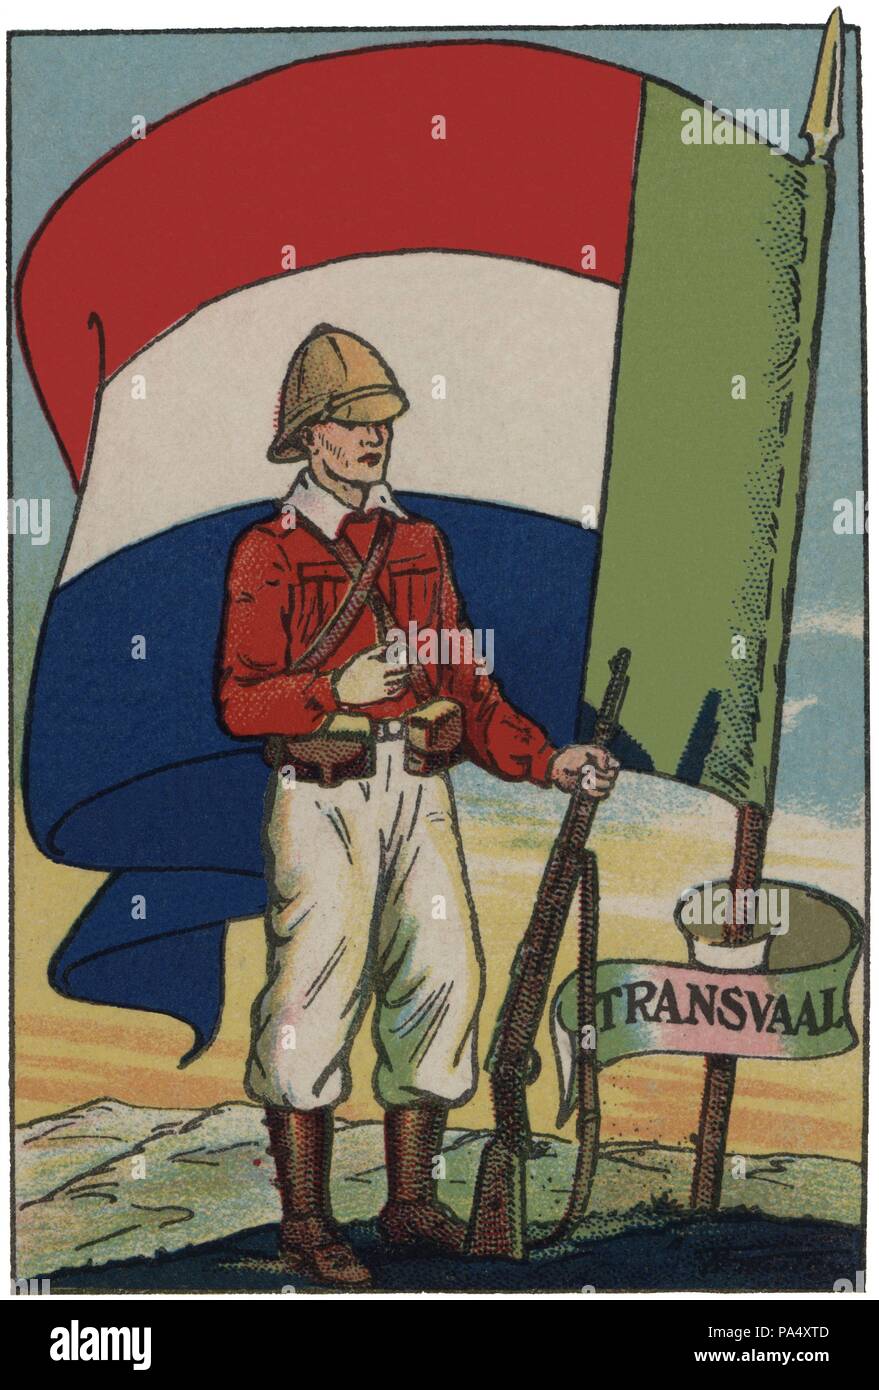 Bandera de Transvaal, provincia de la Unión Sudafricana, y soldado de infantería. Colección de cromos Banderas del Universo. Años 1920. Stock Photo